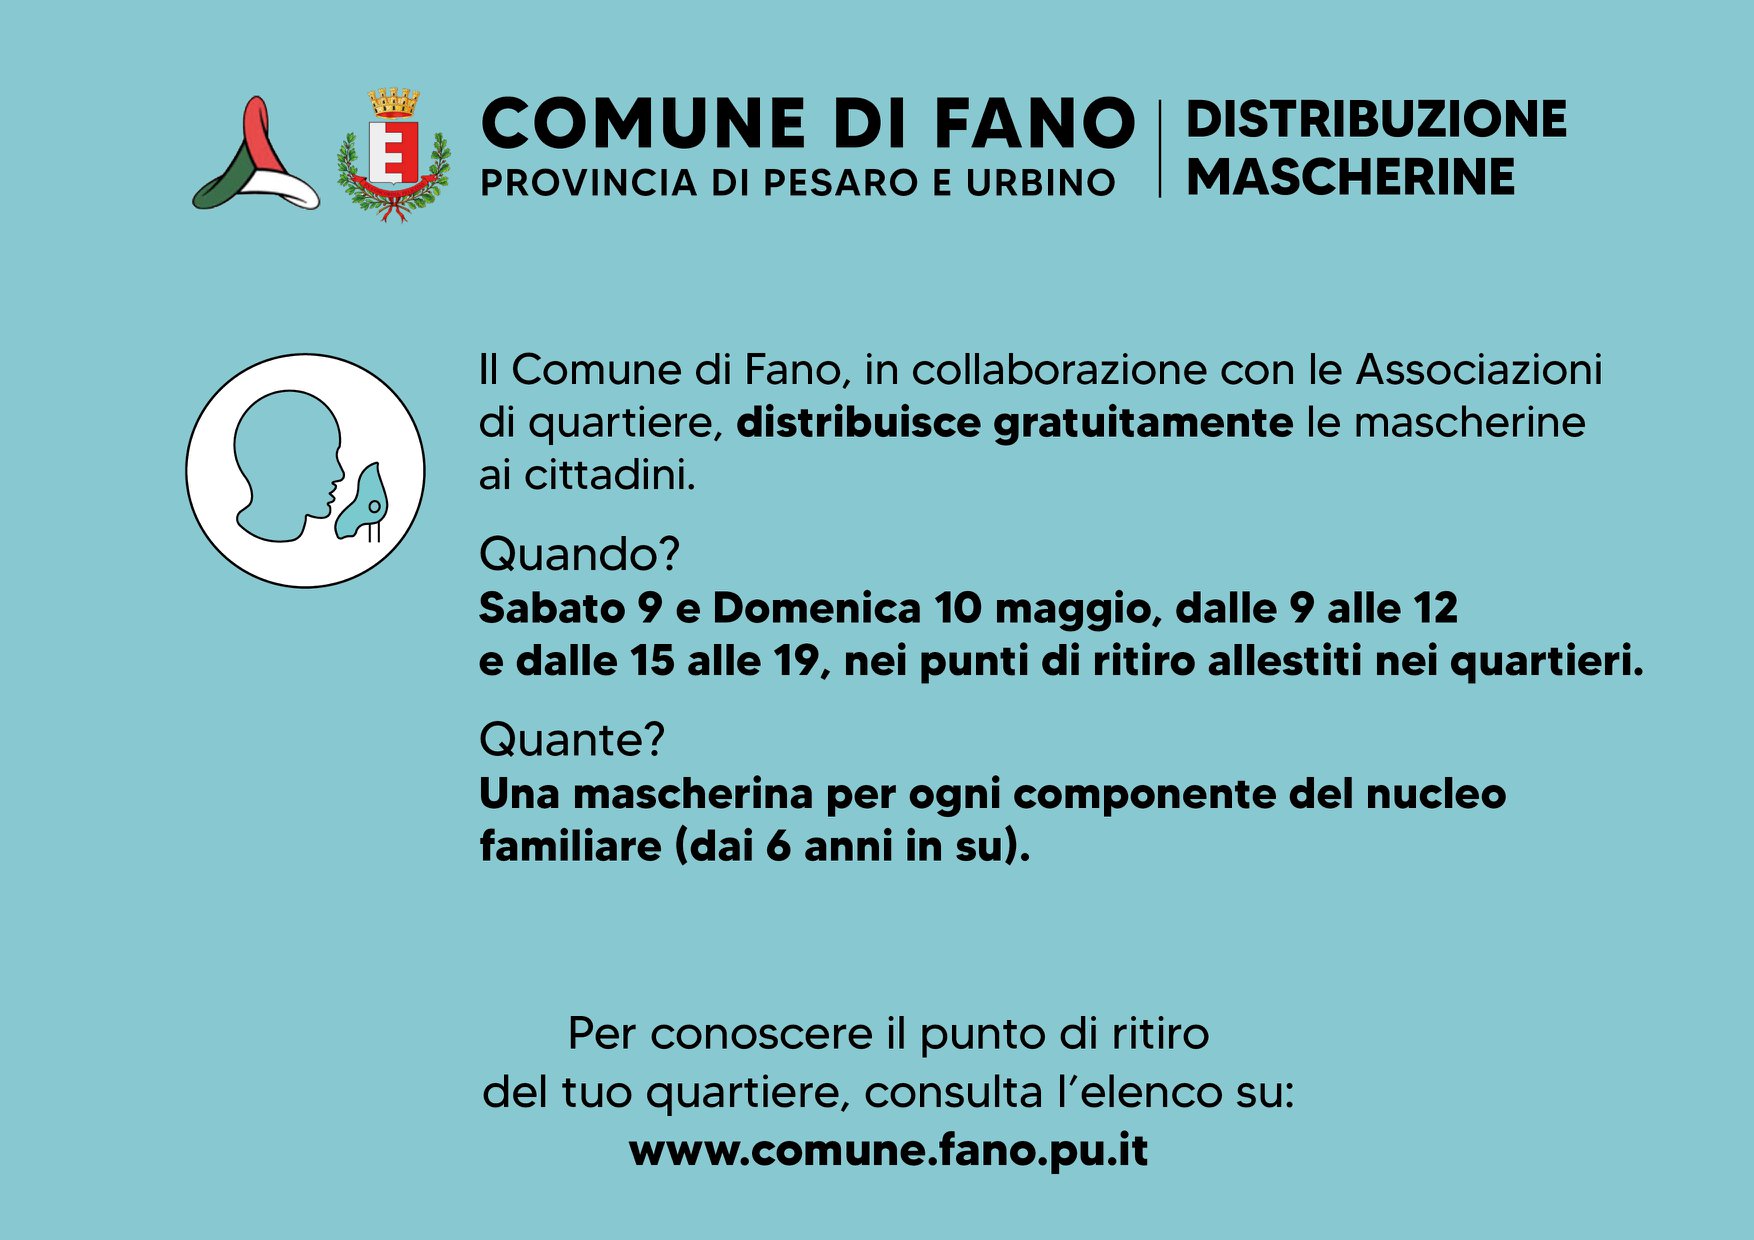 Comune di Fano: Sabato 9 e domenica 10 Maggio 2020 distribuzione gratuita di macherina in 22 punti allestiti nella città